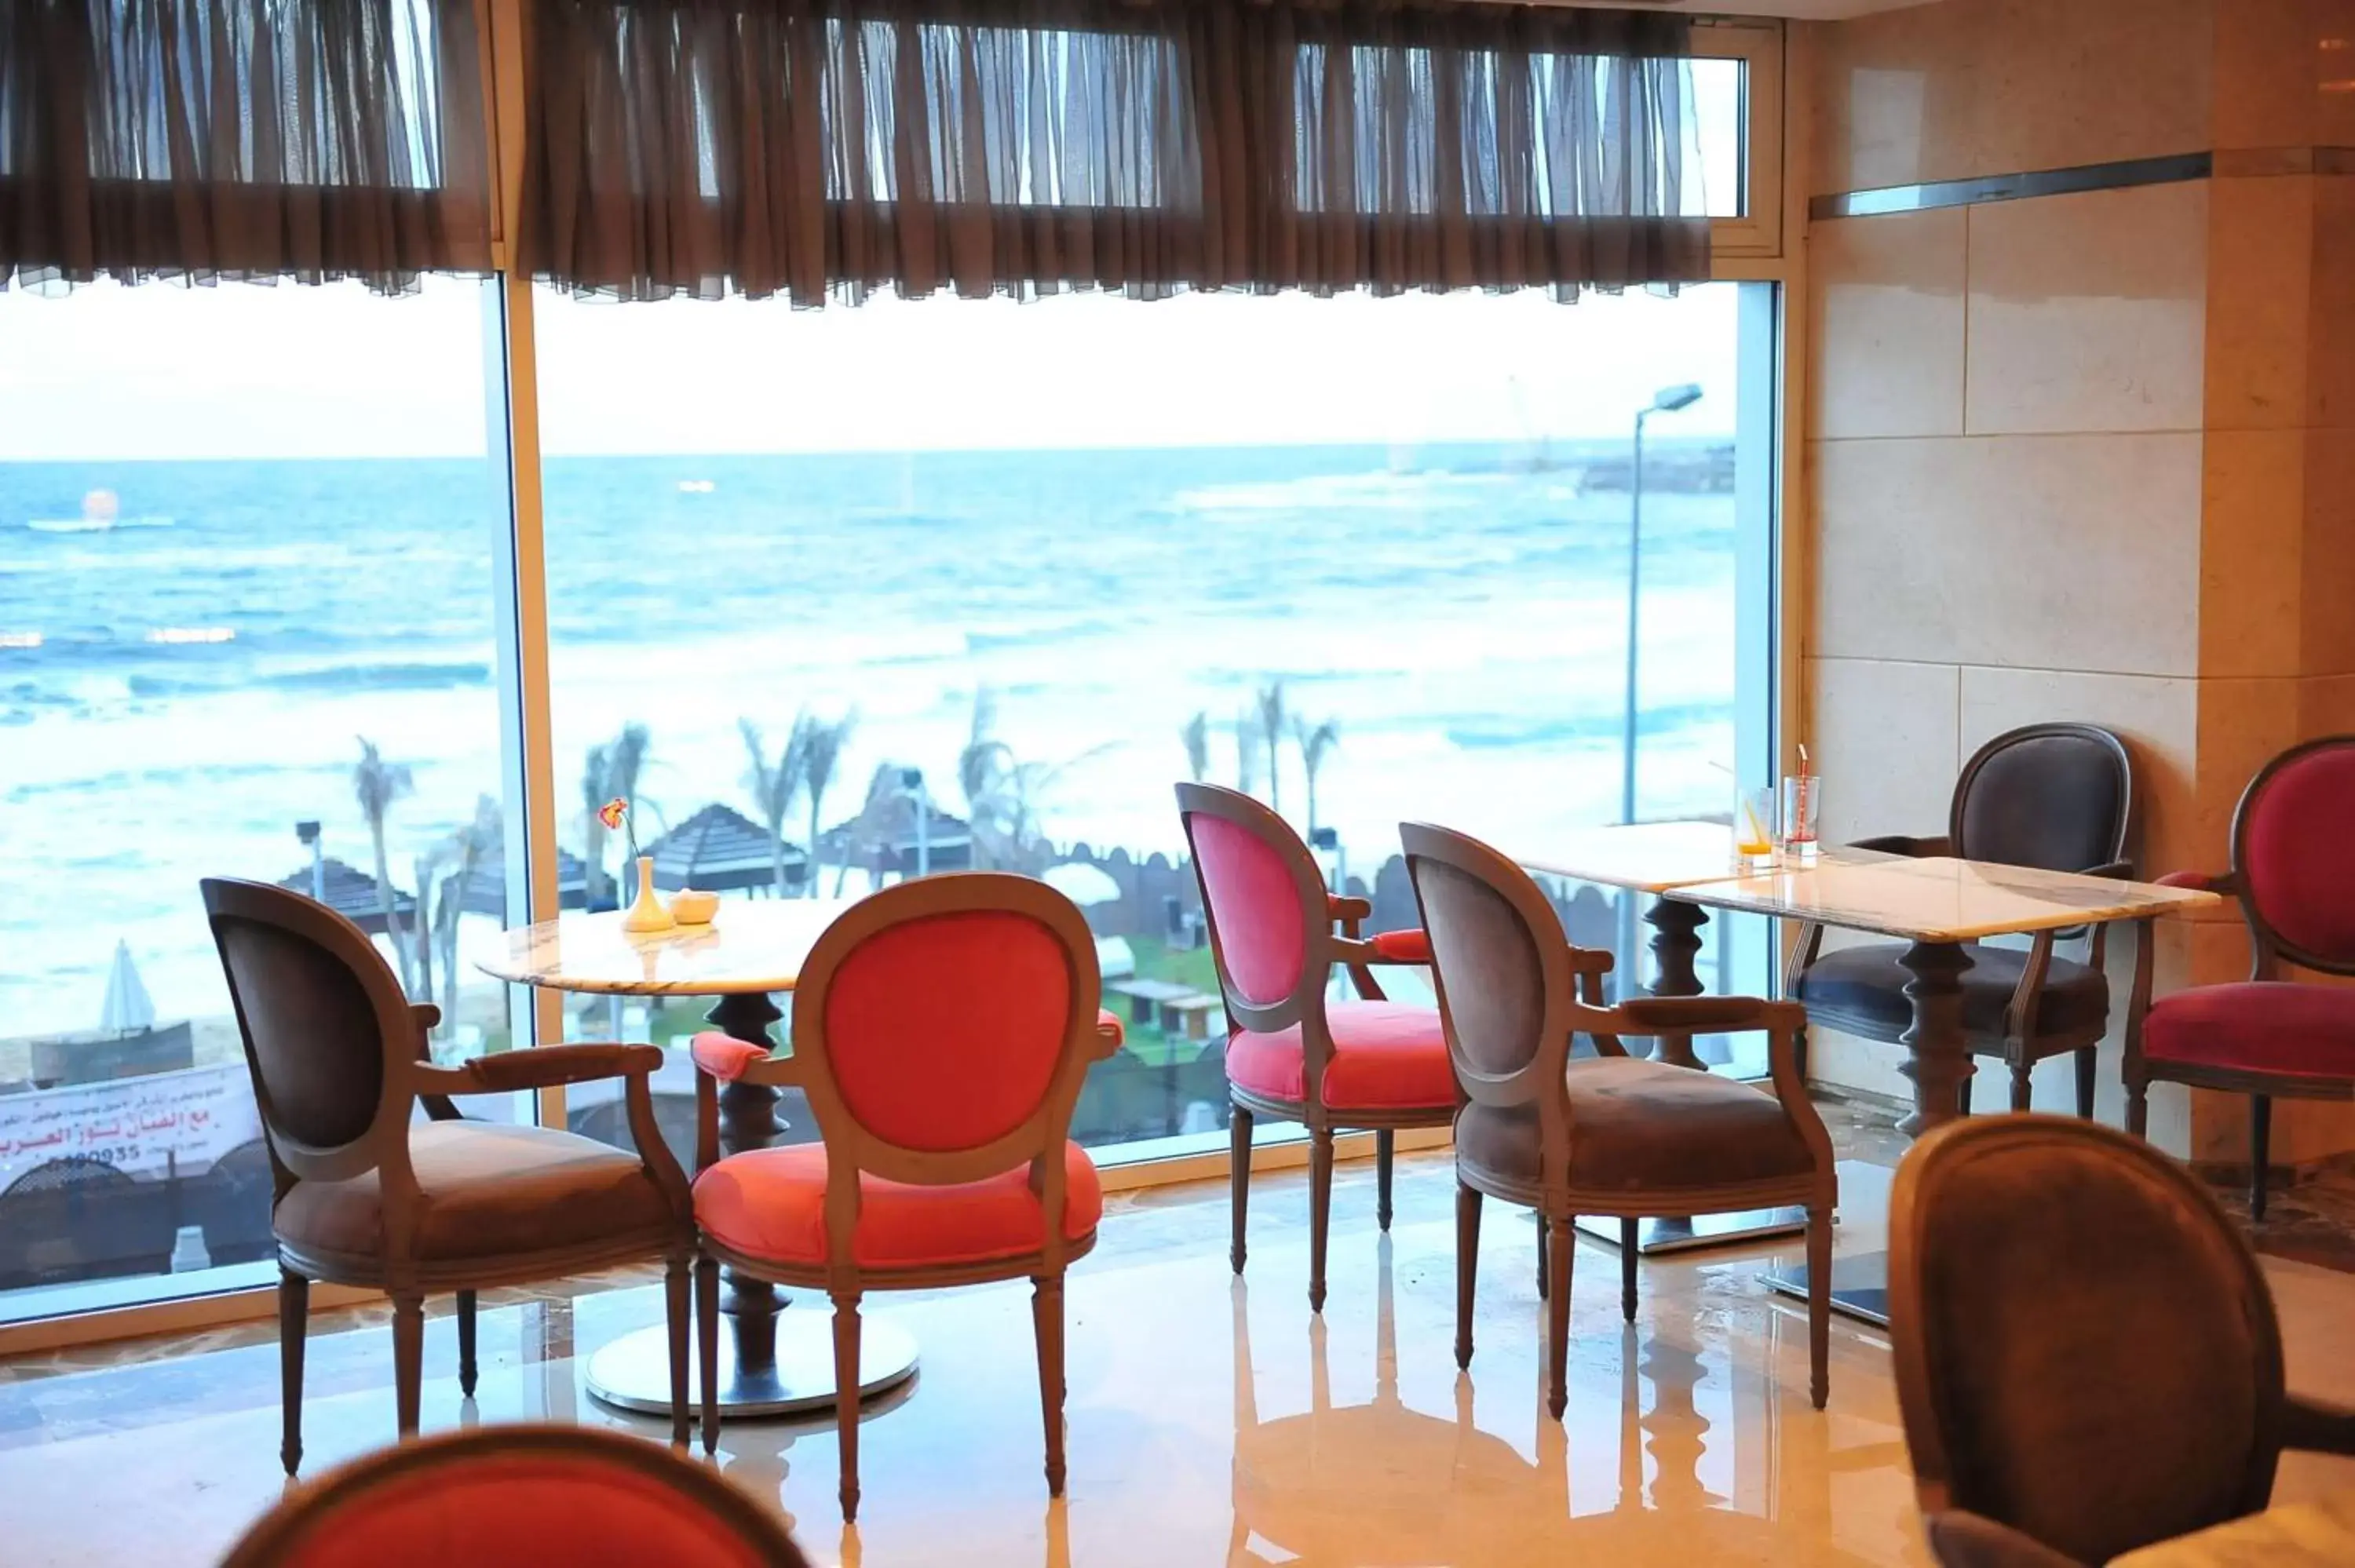 Lobby or reception in Hilton Alexandria Corniche